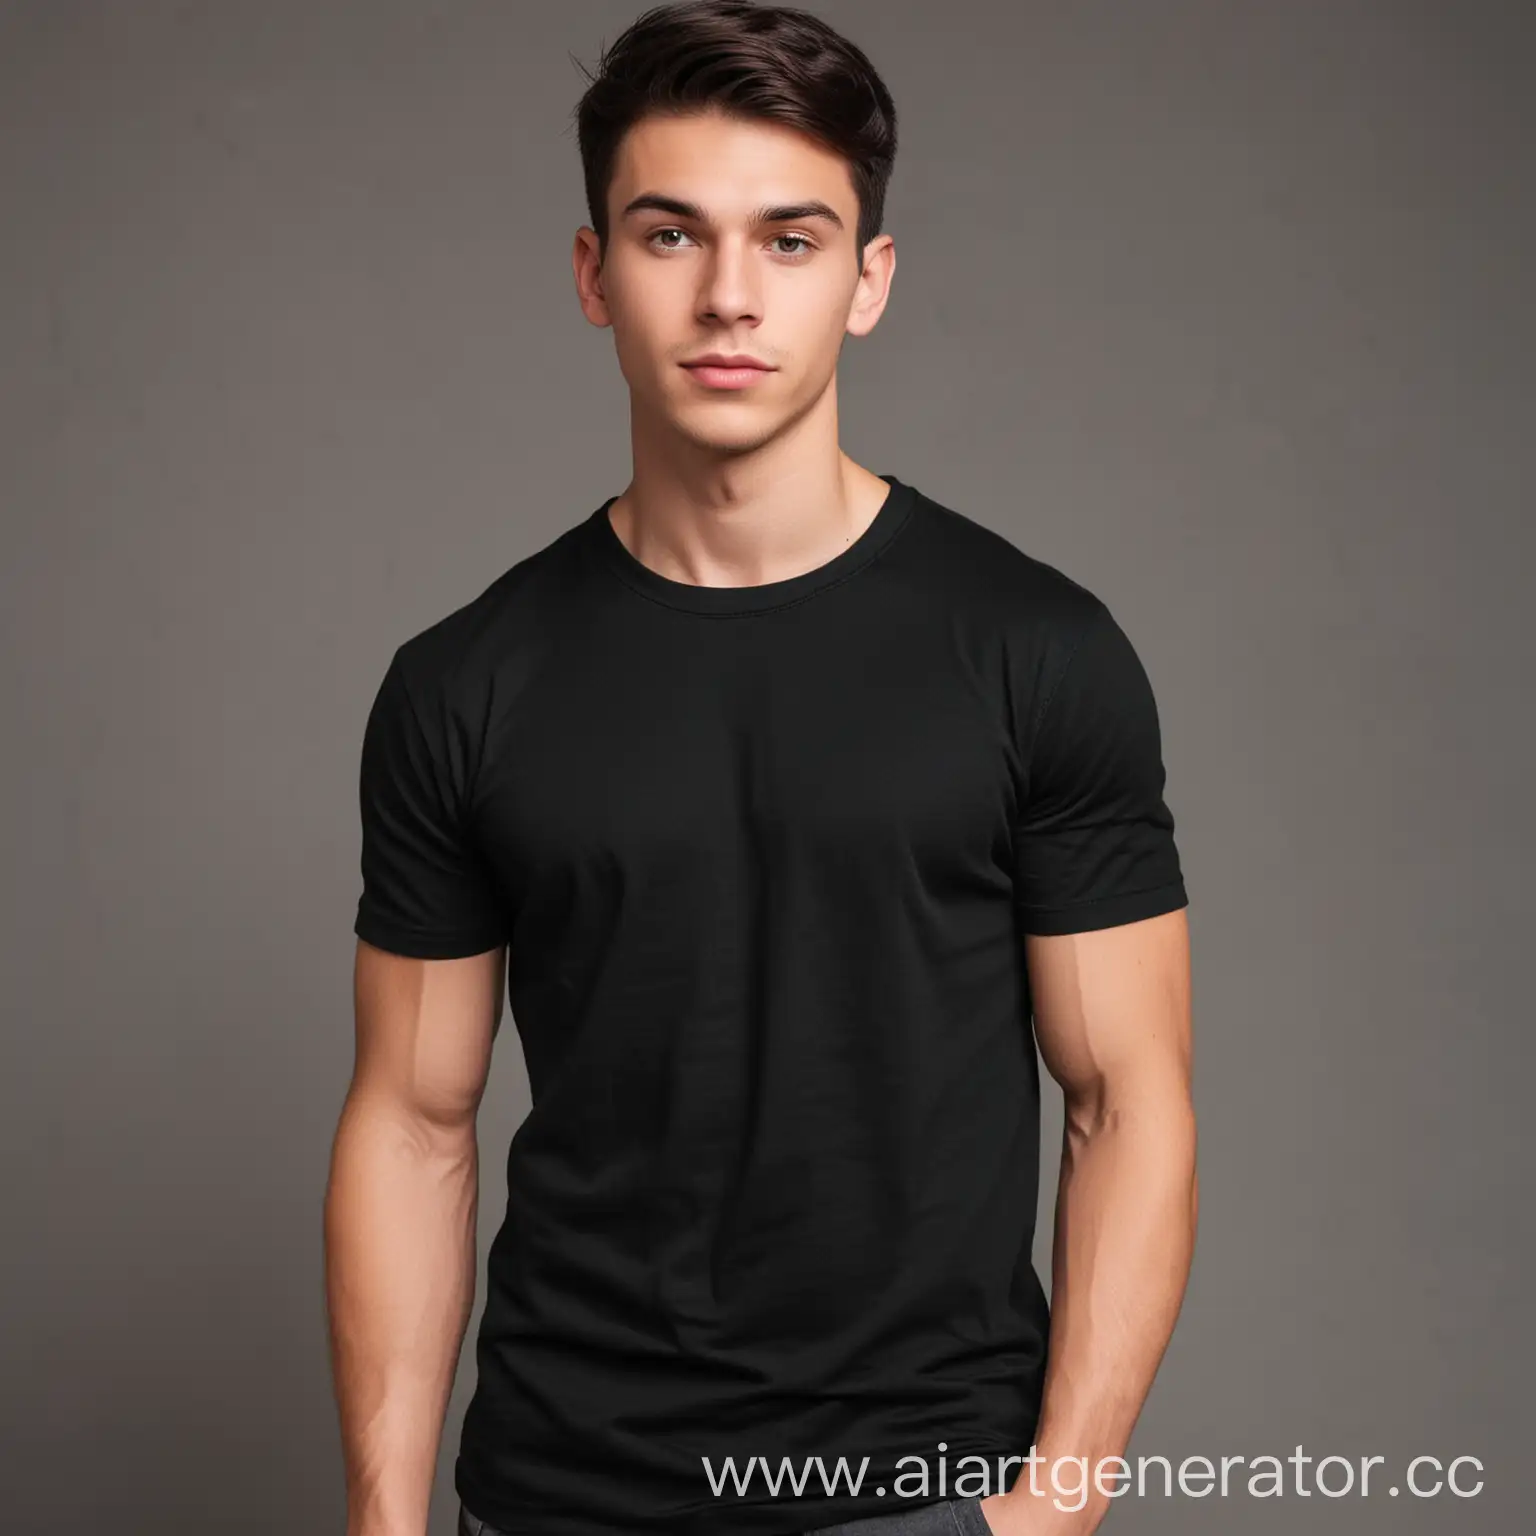 молодой парень спортивного телосложения с темными волосами в черной однотонной хлопковой футболке, размер 3:4